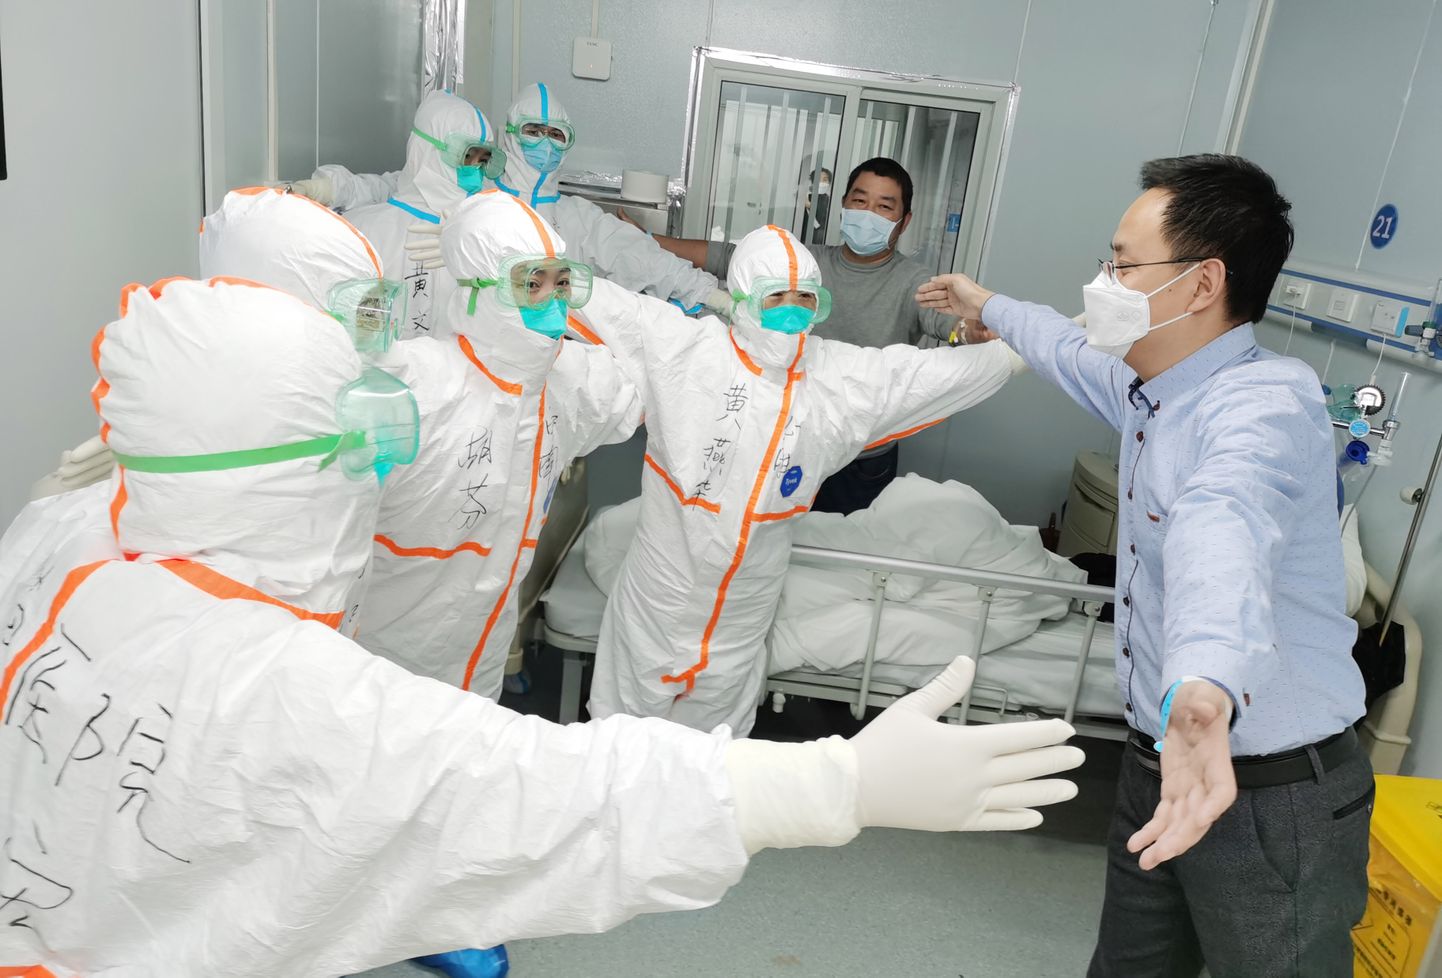 Tervenenud patsient tänab Wuhanis meditsiinitöötajaid.